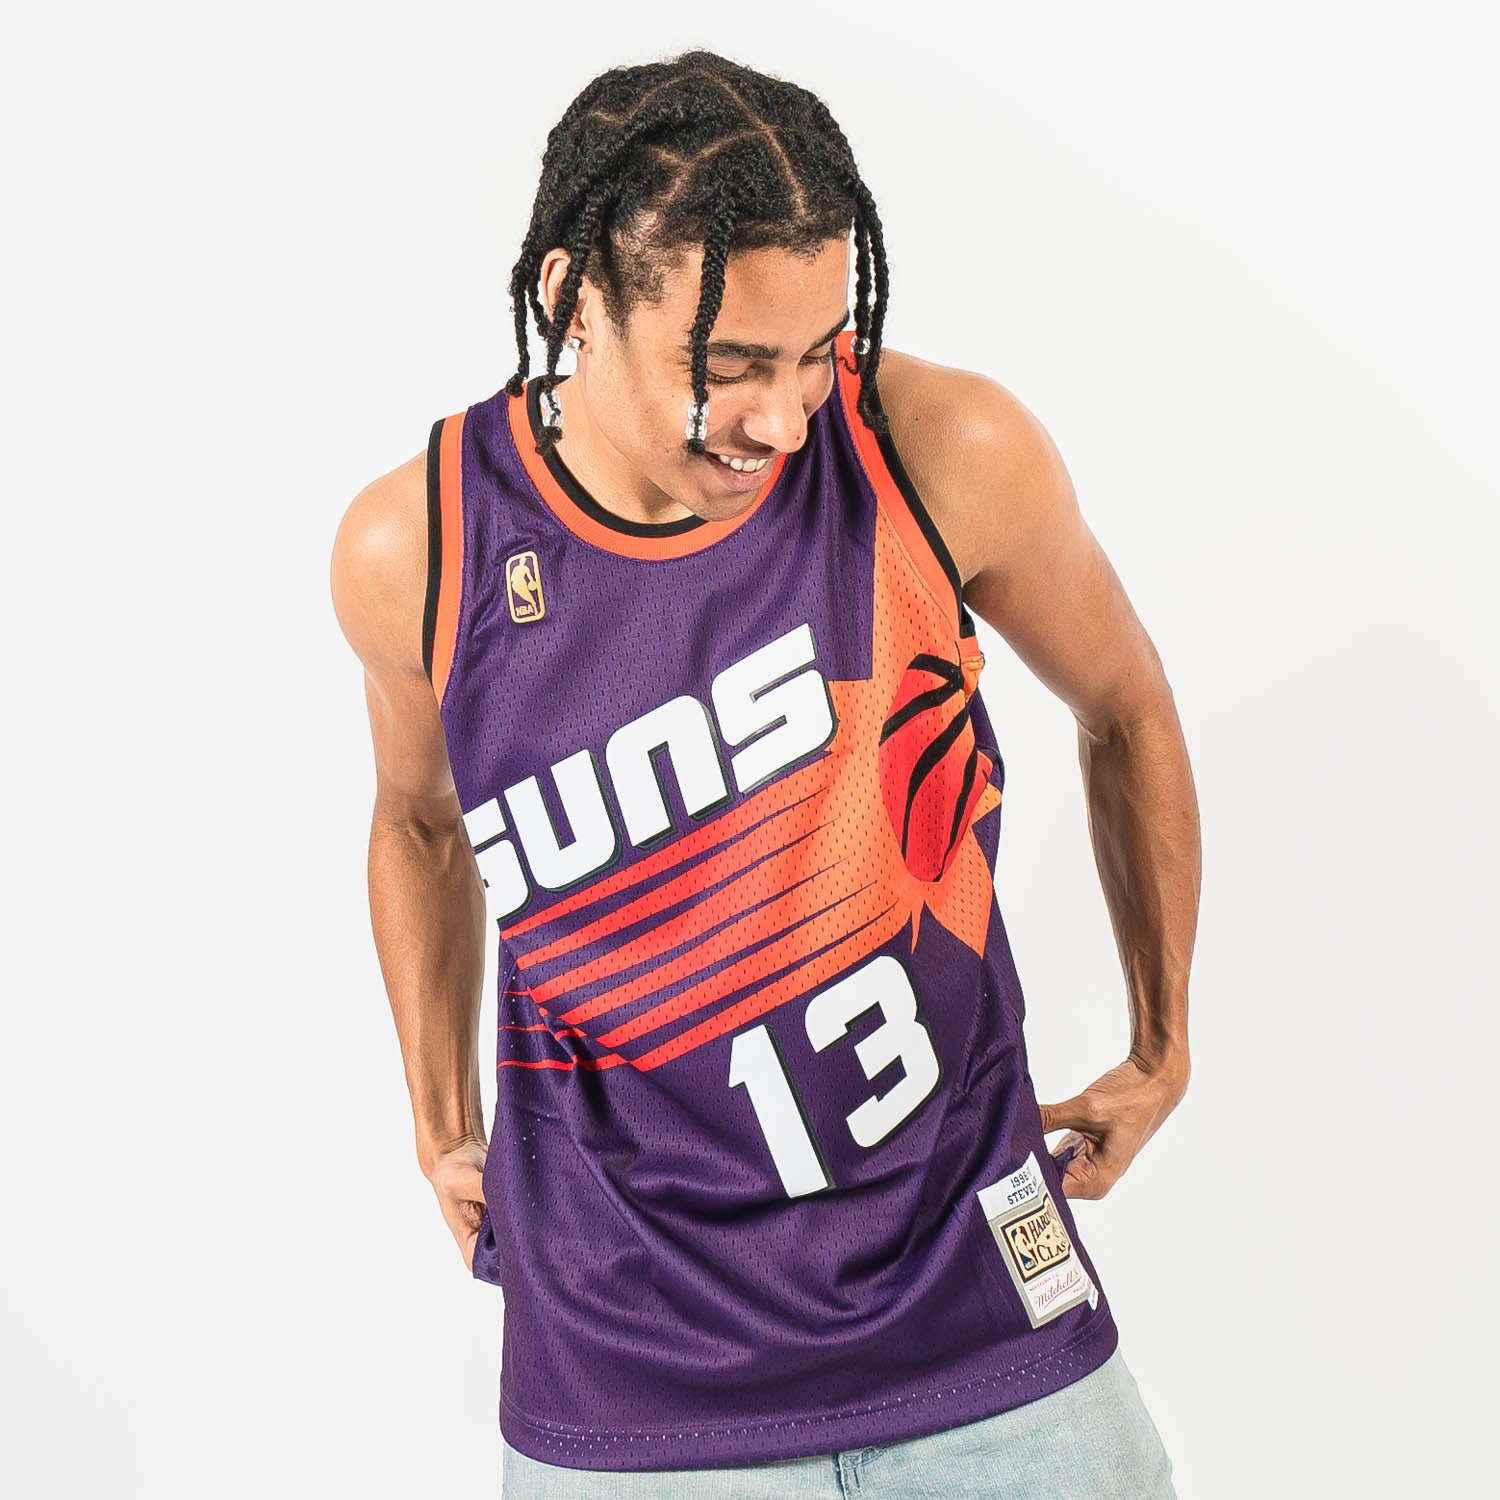 Steve Nash - Phoenix Suns *City Edition 2020/21* - JerseyAve - Marketplace